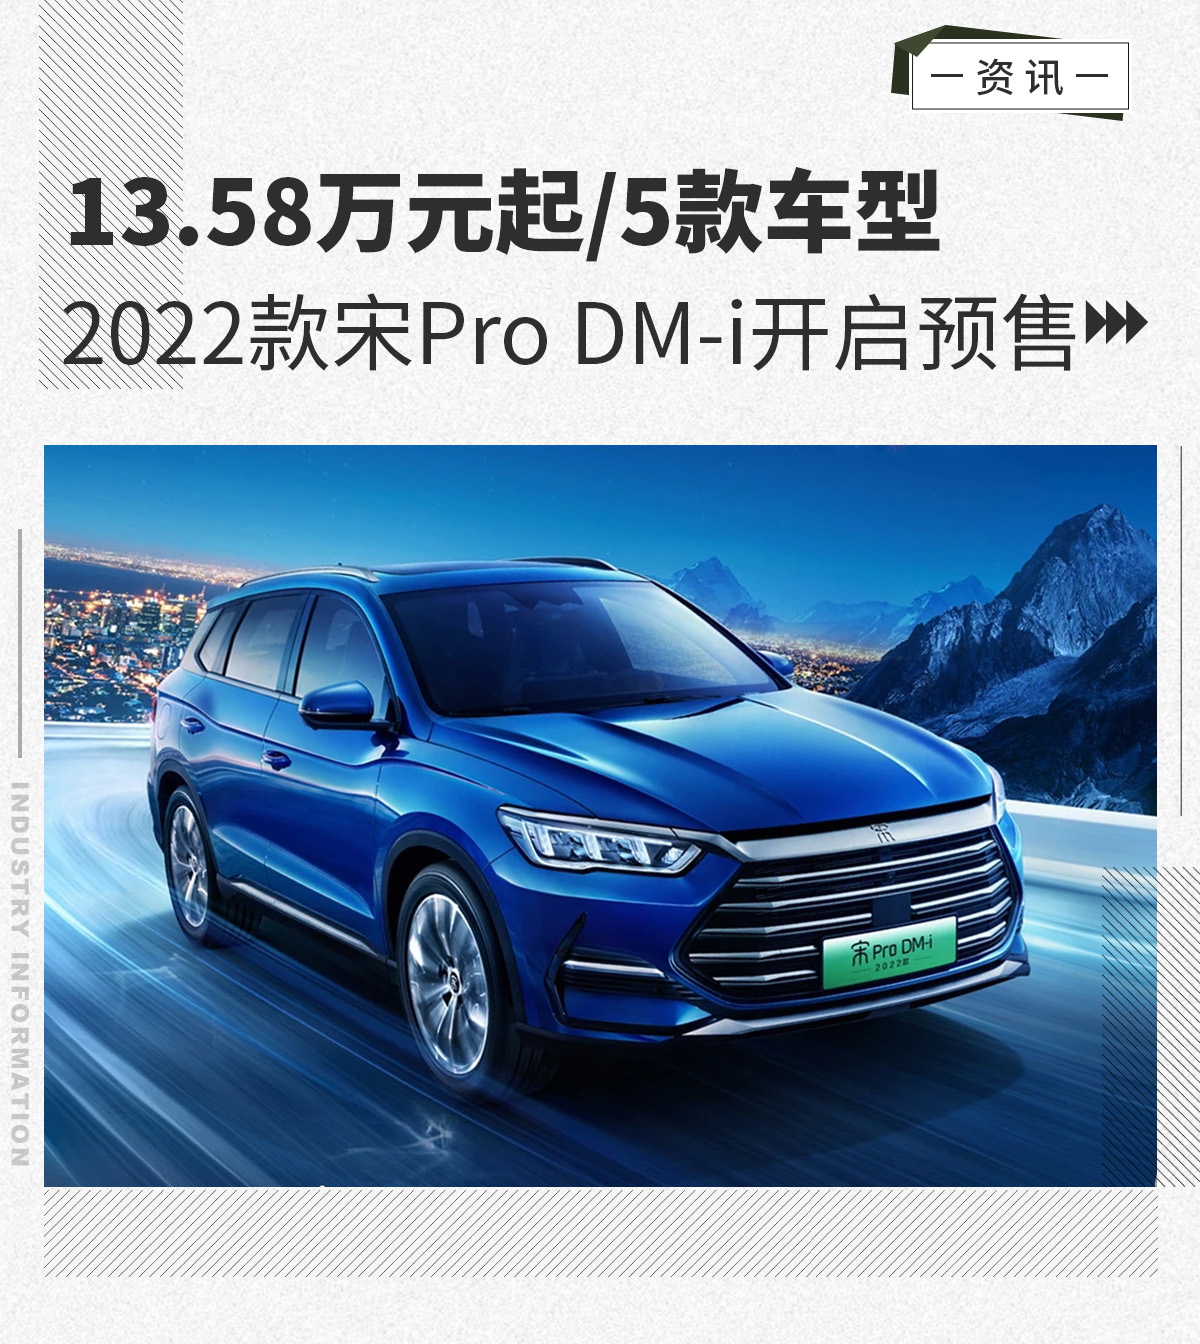 2022款宋Pro DM-i开启预售 13.58万元起/5款车型